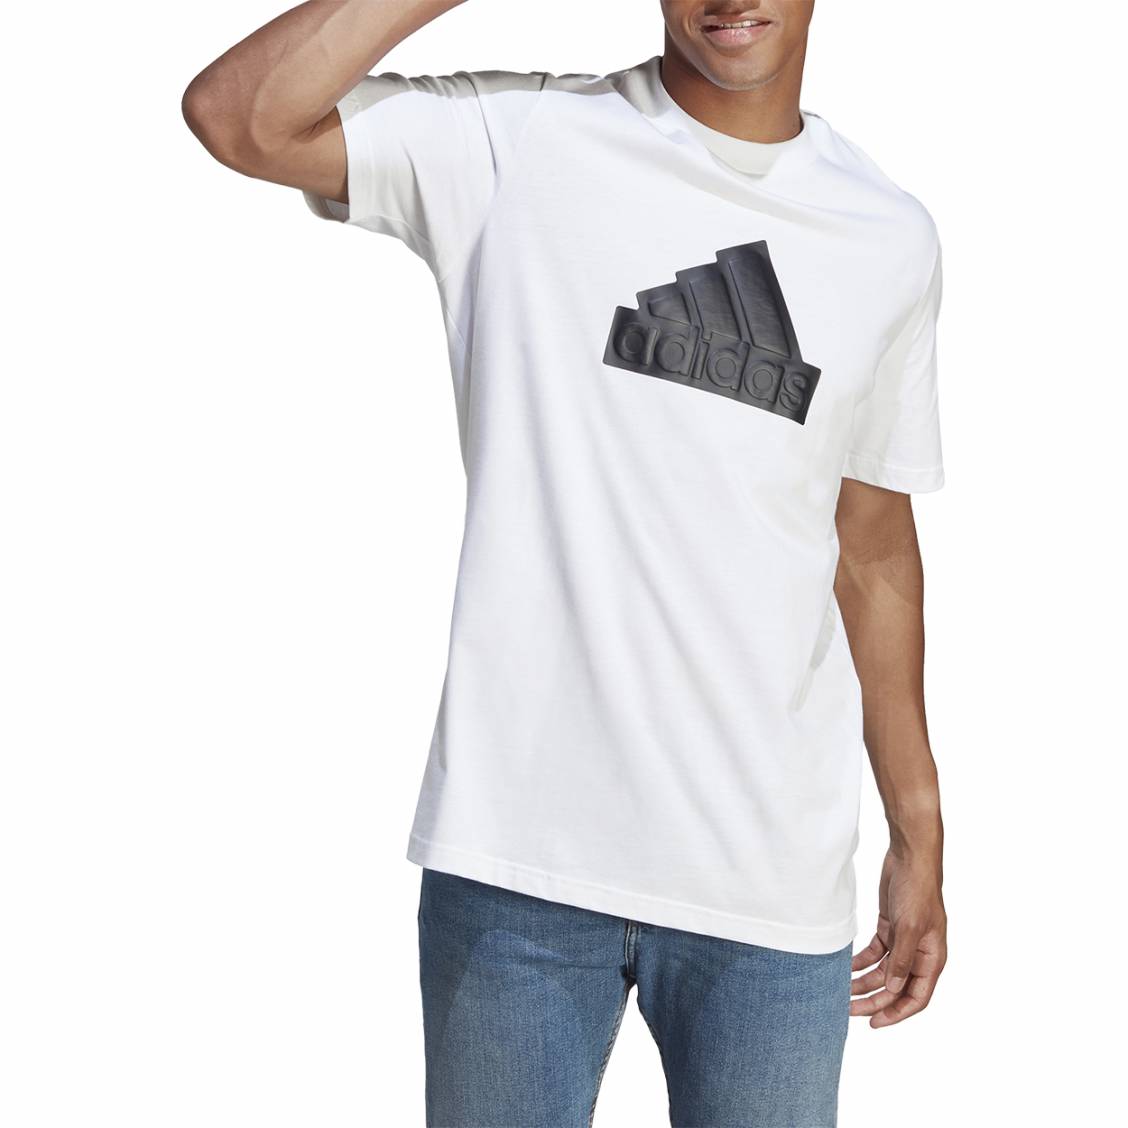 https://www.ruedeshommes.com/media/produits/img/111988-144907vt-t-shirt-adidas-en-coton-blanc-uni-presentant-une-coupe-droite-et-un-large-logo-noir-debosse-02_1128x1128.jpg